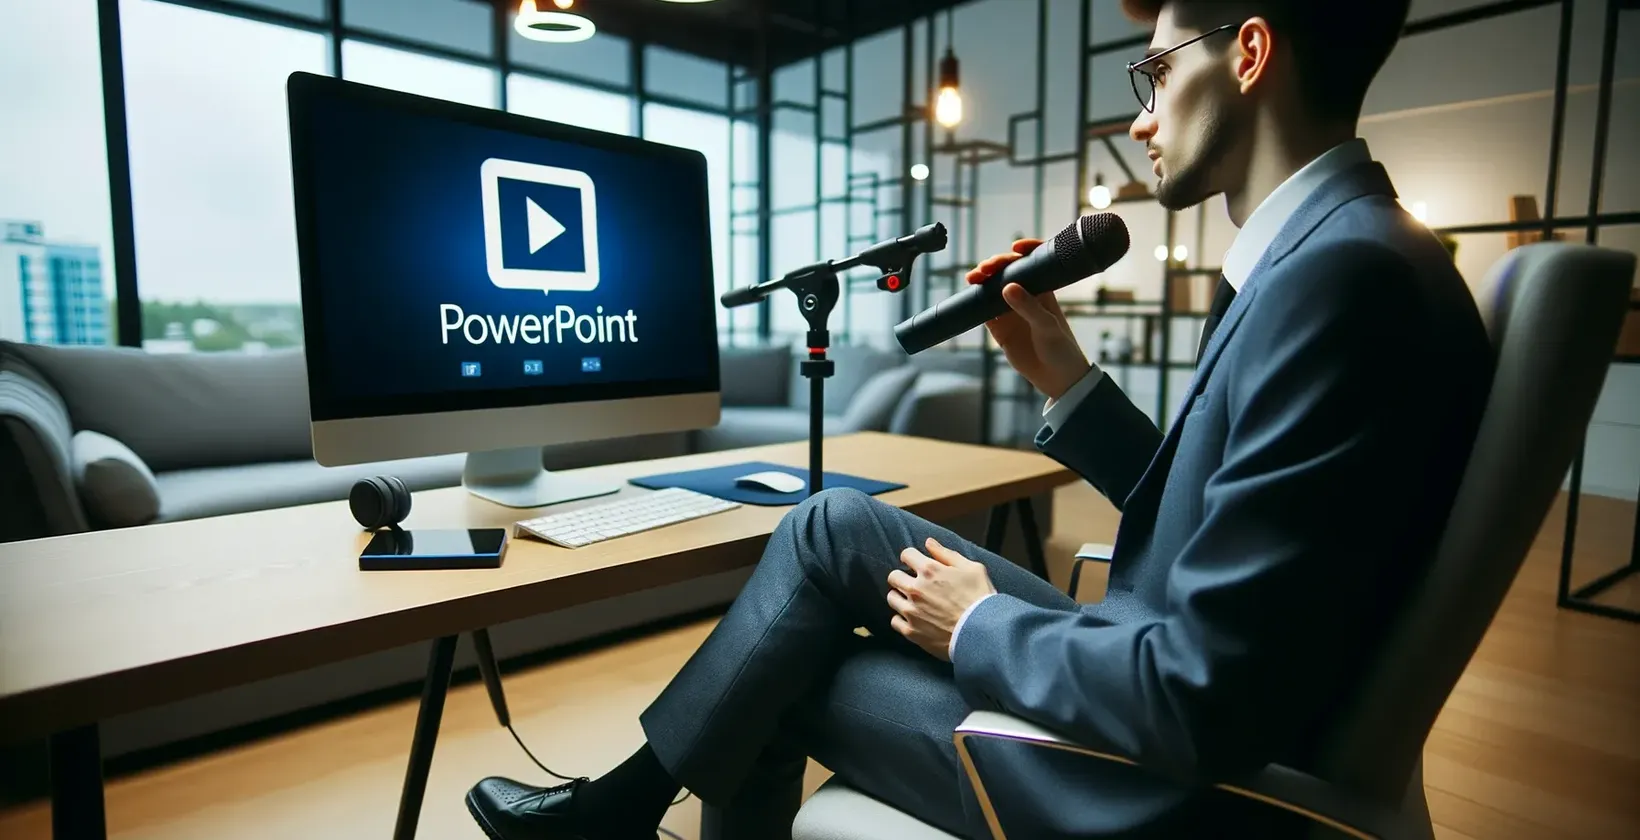 Mies toimistossa mikrofonin kanssa katsoo monitoriin, jossa näkyy PowerPoint-logo.